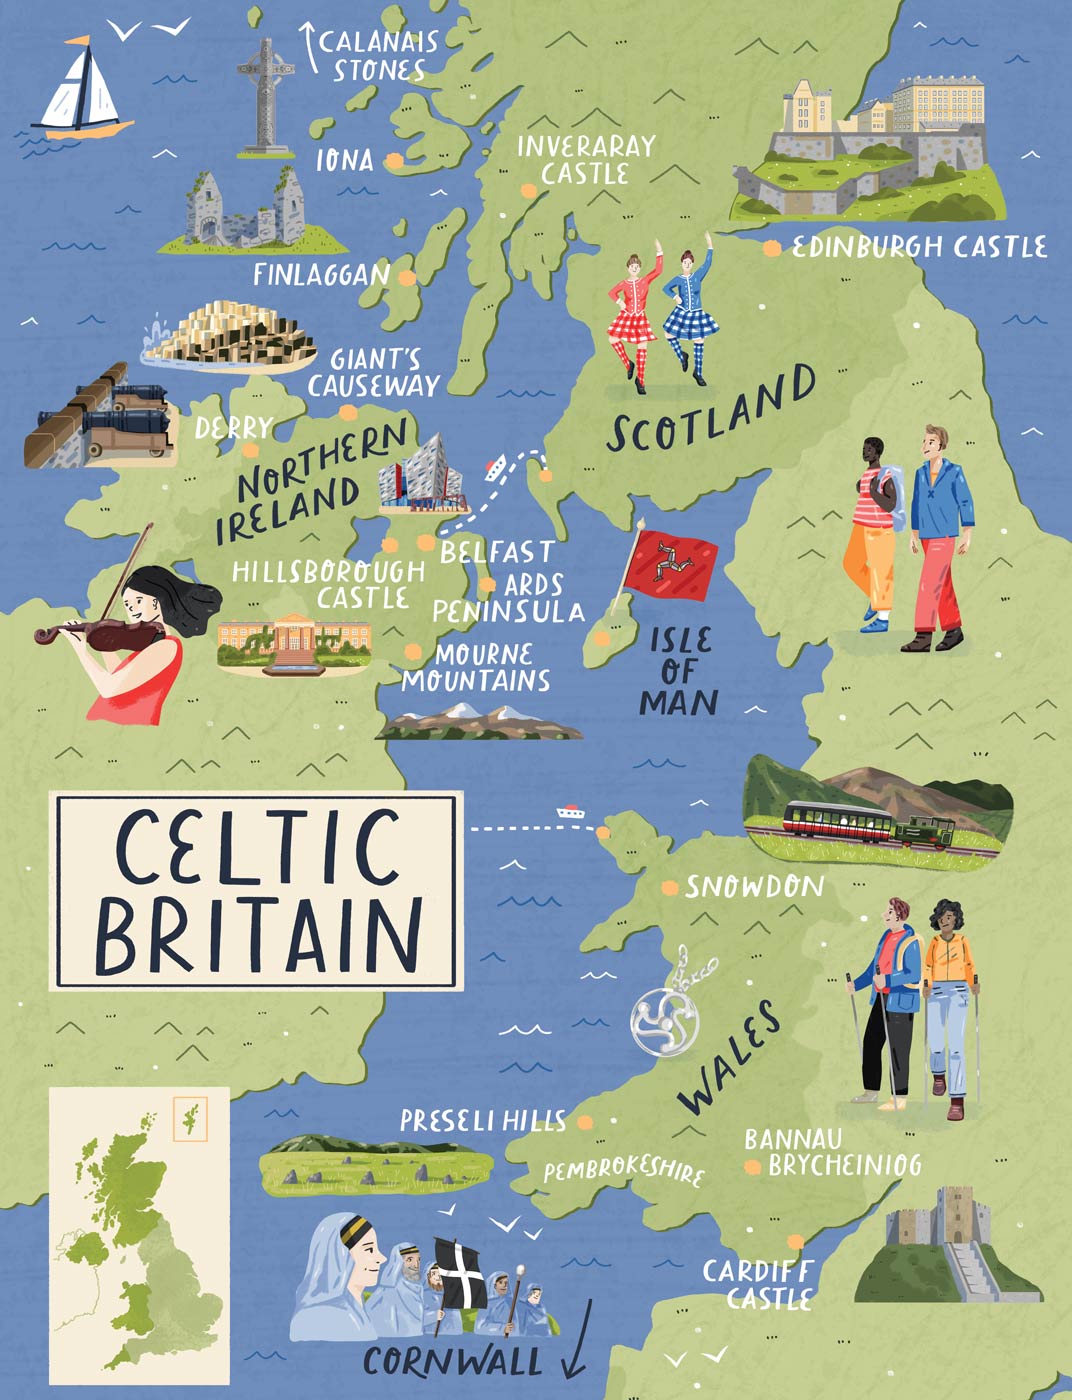 Celtic Britain Illustrated Map portfolio cover image